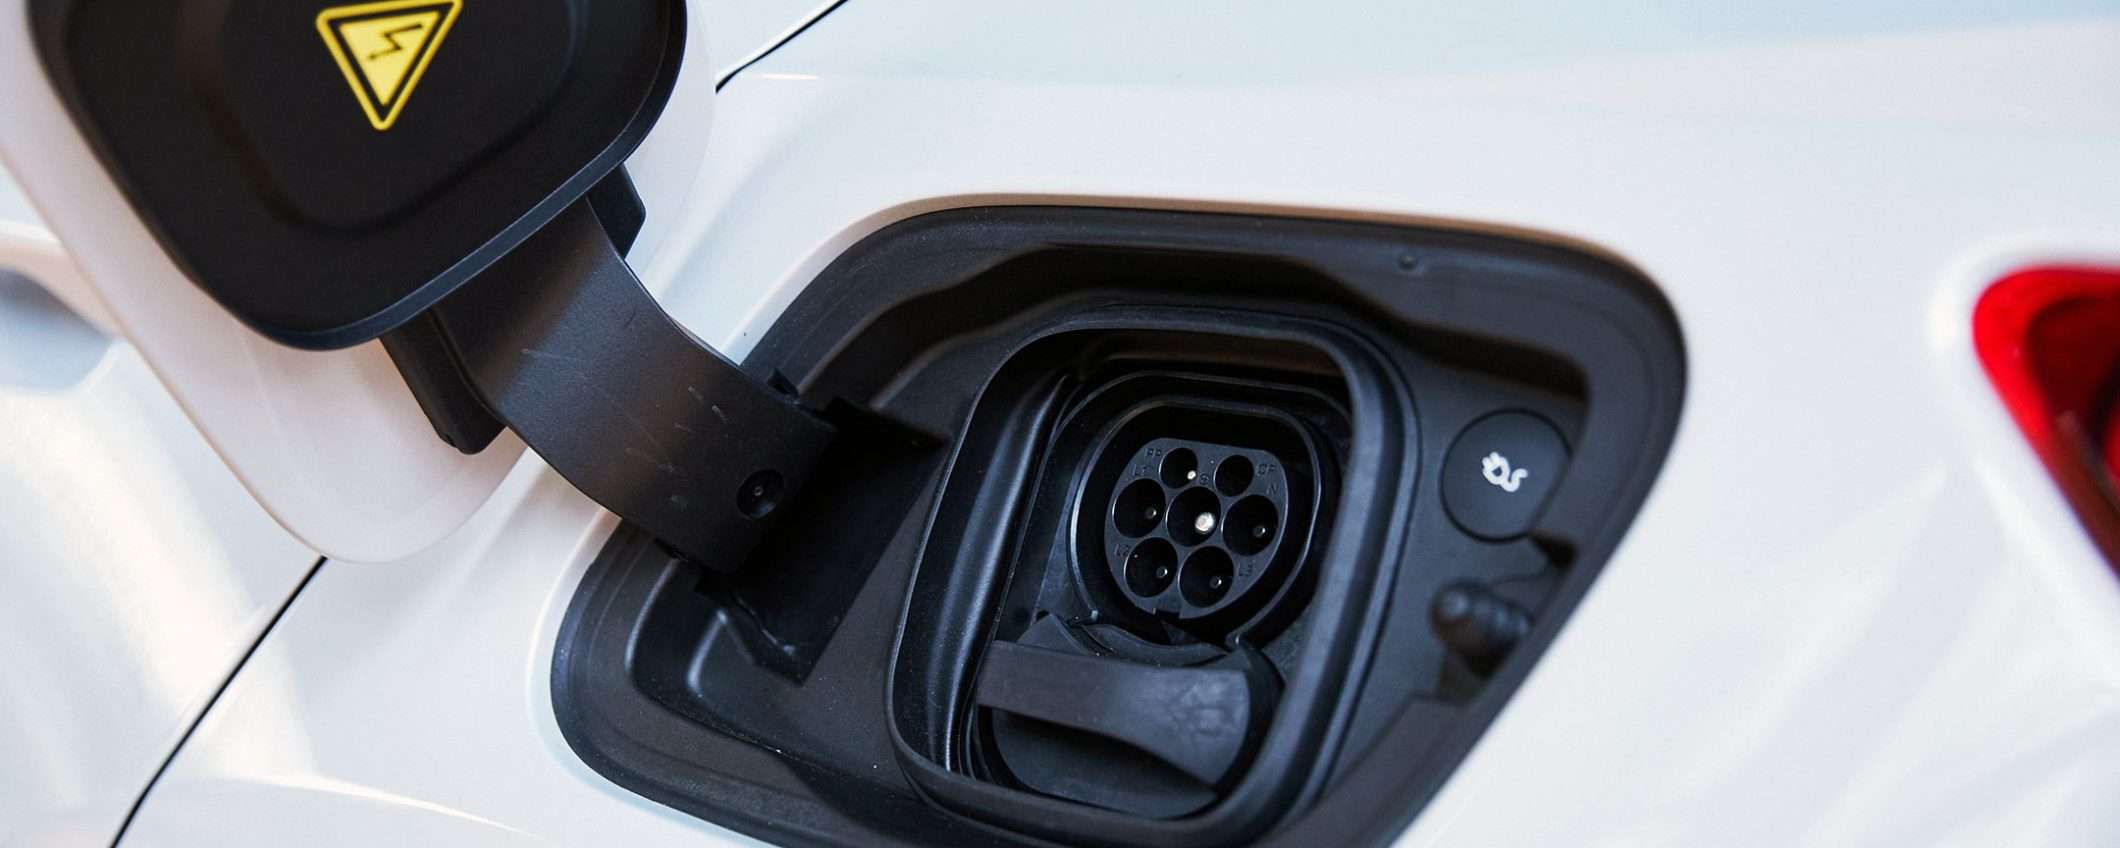 Volvo produrrà solo auto elettriche entro il 2030